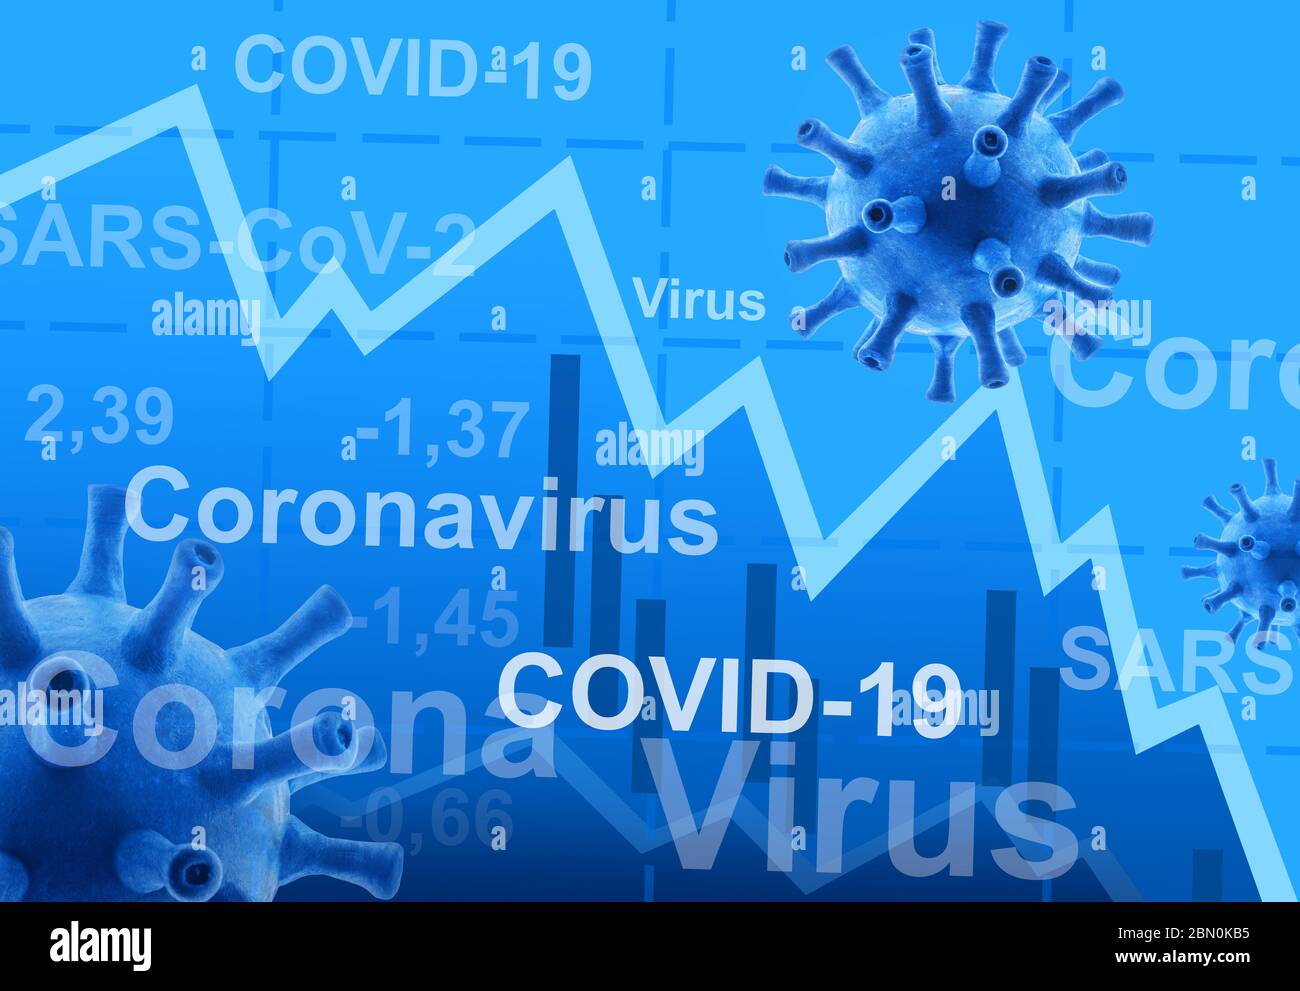 COVID-19 Coronavirus-Effekt auf Unternehmen, Grafik des Aktienmarktes während der COVID-Pandemie, Auswirkungen der Weltwirtschaft auf das Corona-Virus, Konzept der globalen Finanzwelt Stockfoto